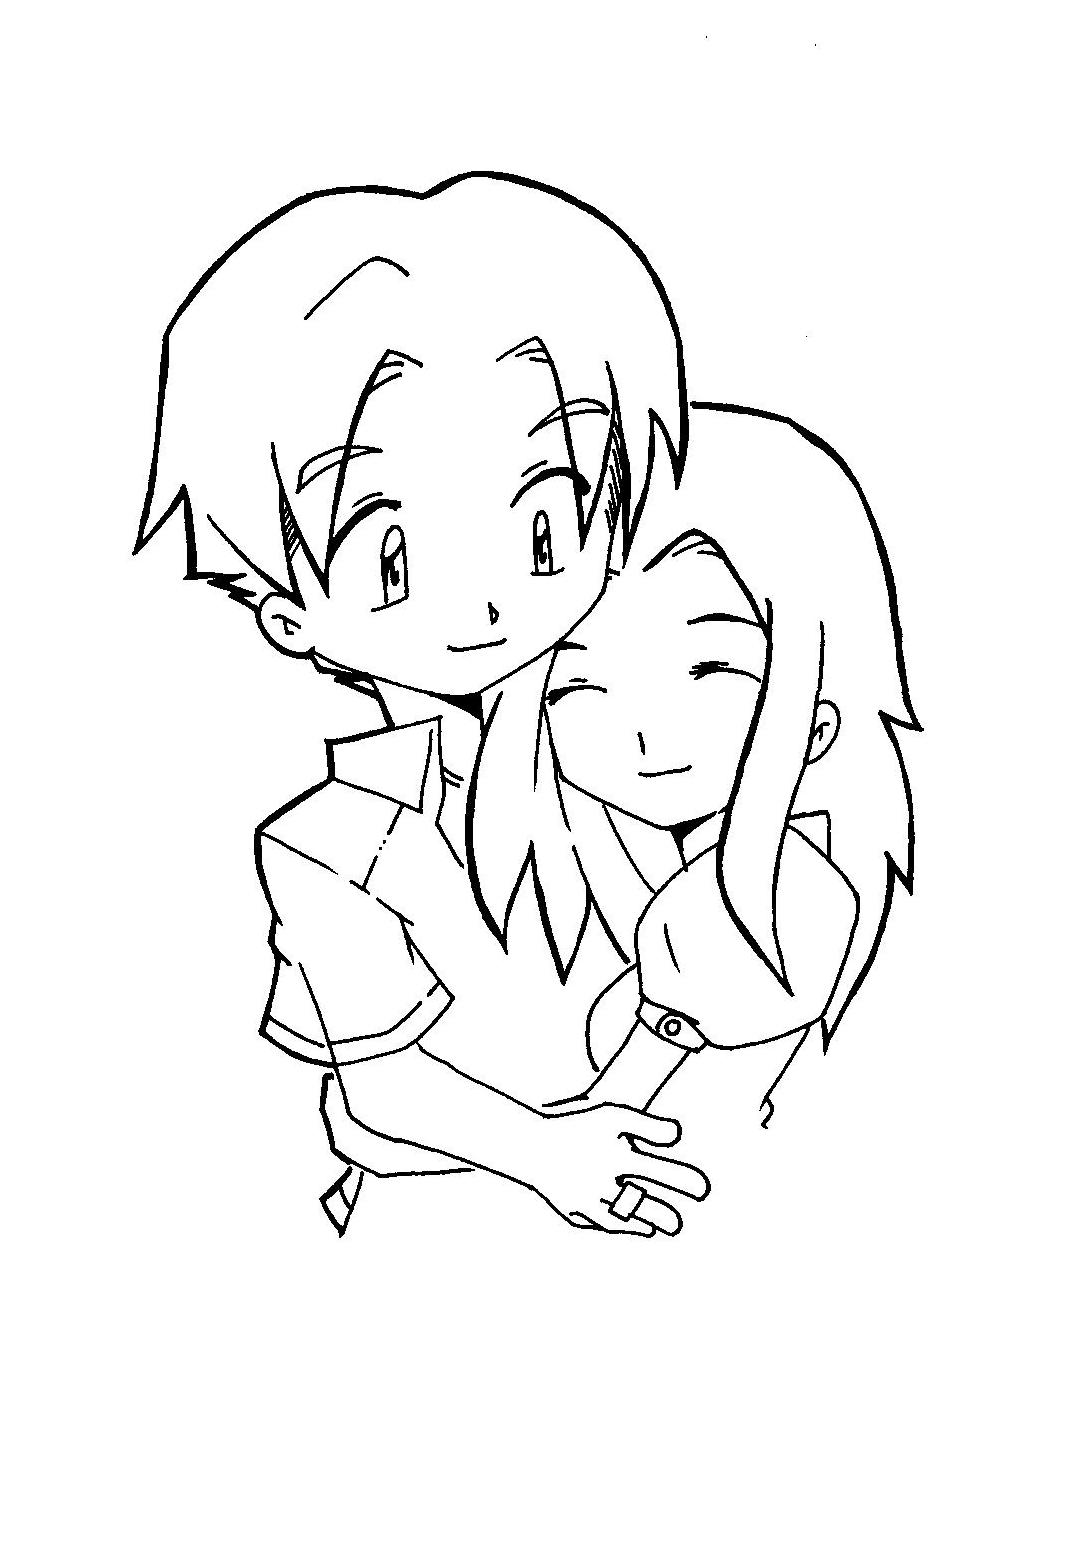 chibi couple sama cute drawing ed anime drawings manga getdrawings deviantart